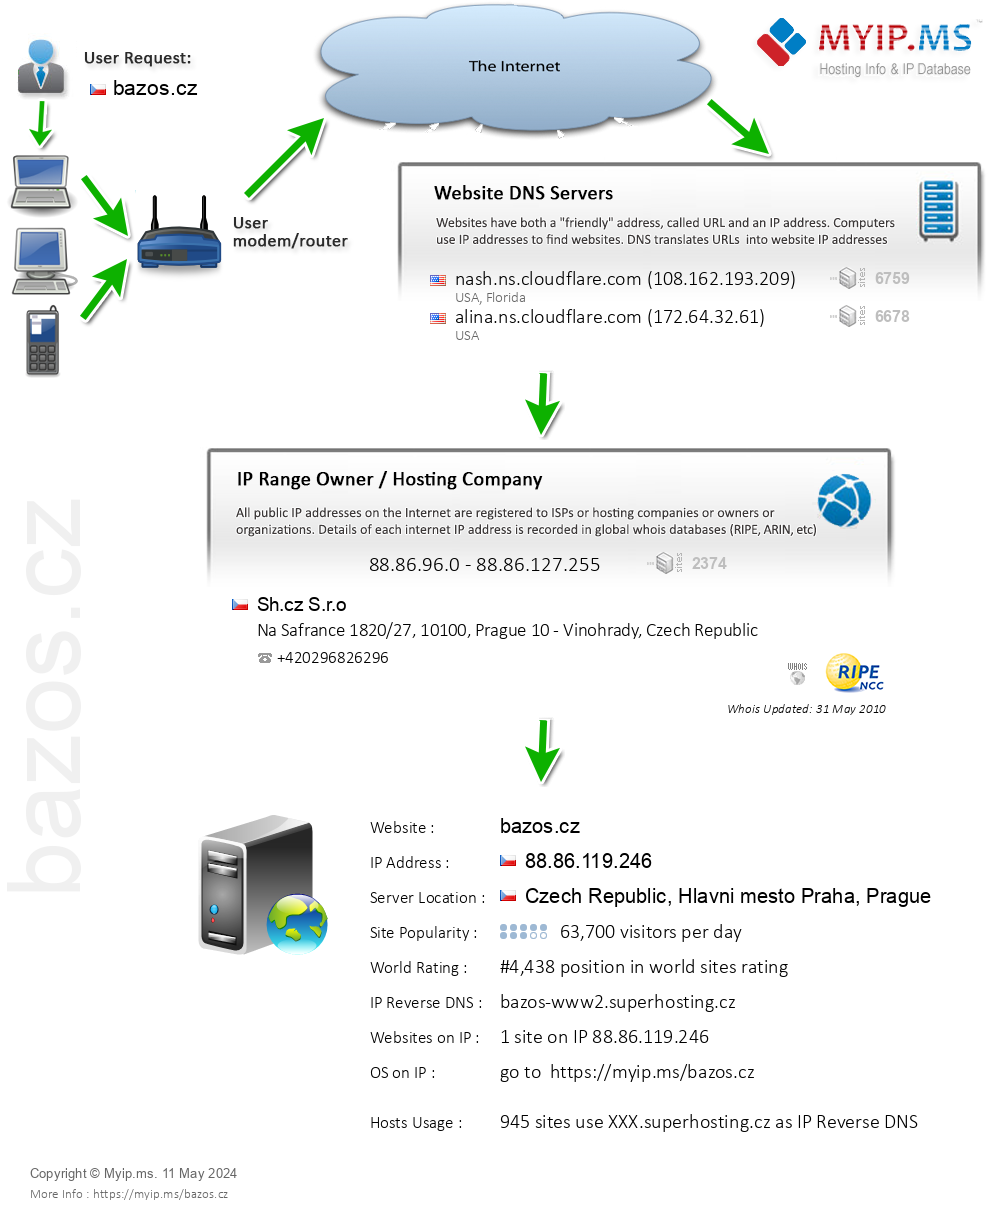 Bazos.cz - Website Hosting Visual IP Diagram